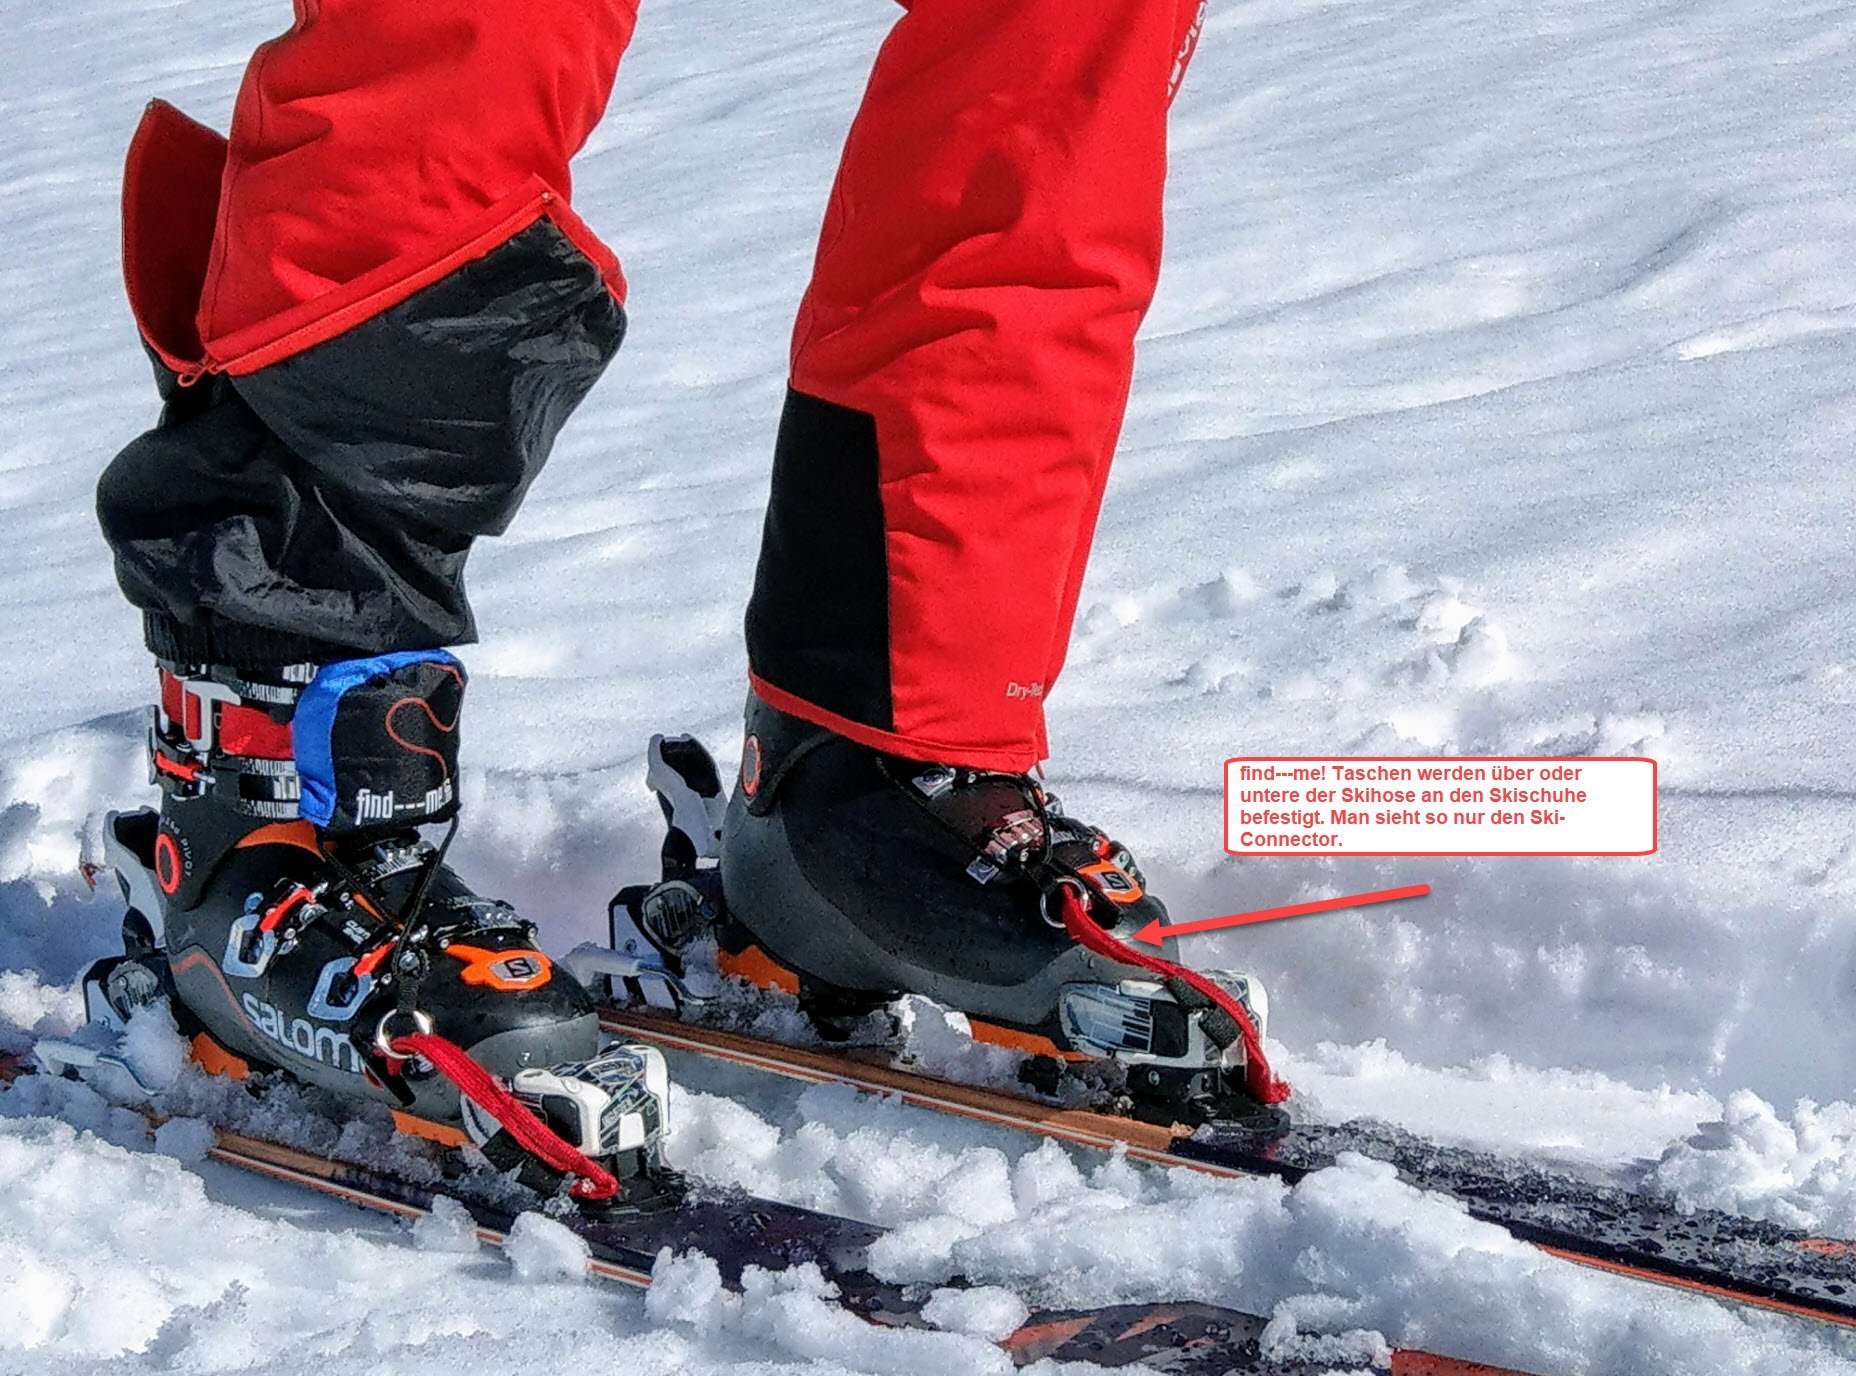 Find---meT Taschen unter oder über der Skihose befestigen. Nur die Ski-Connectoren verbinden Ski und Tiefschneebänder Lawinenbänder